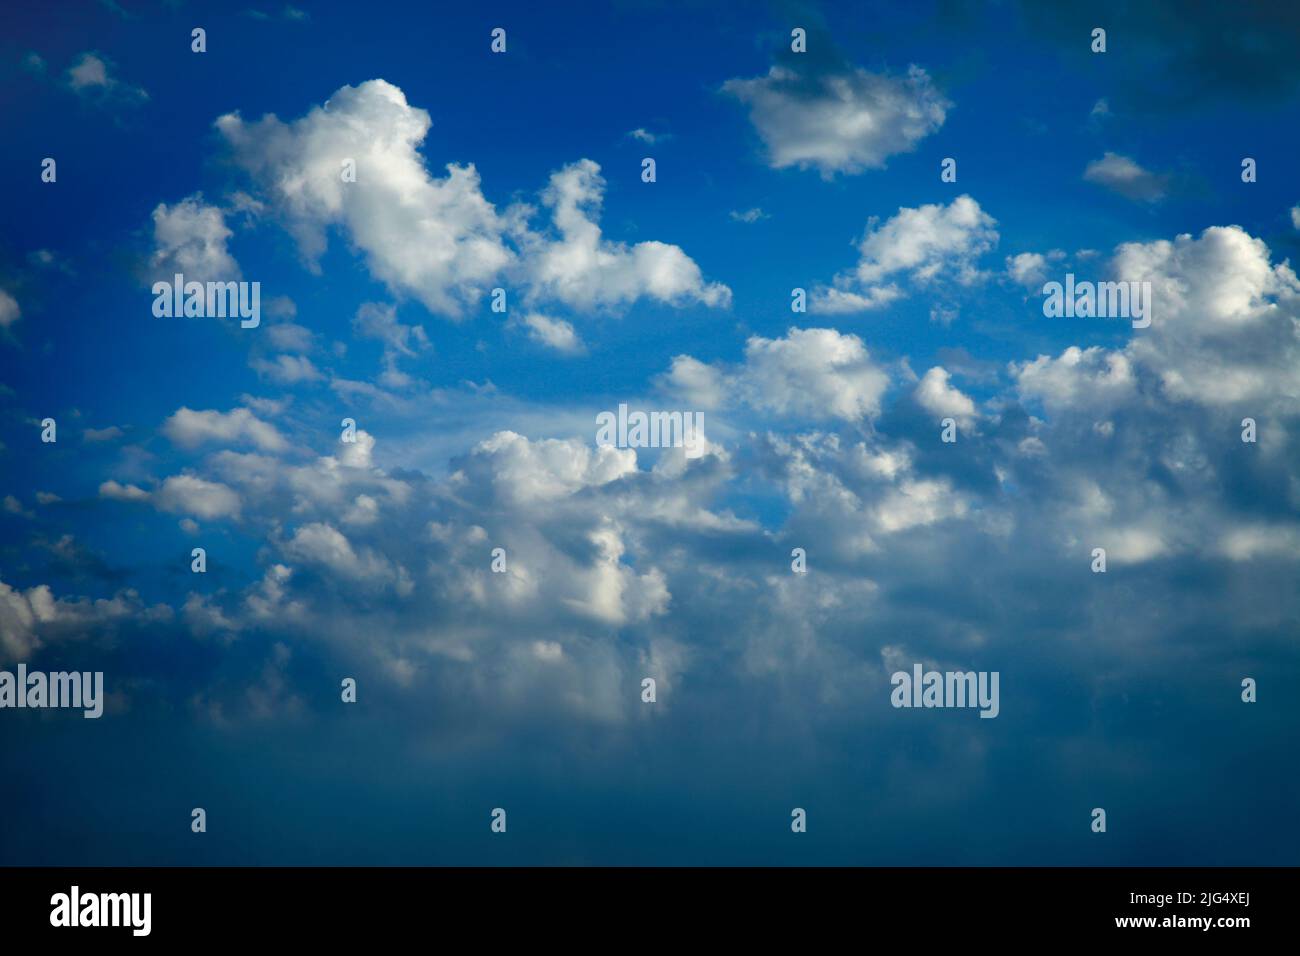 CONCEPTO DE AIRE LIMPIO: Cielo azul con nubes esponjosas Foto de stock